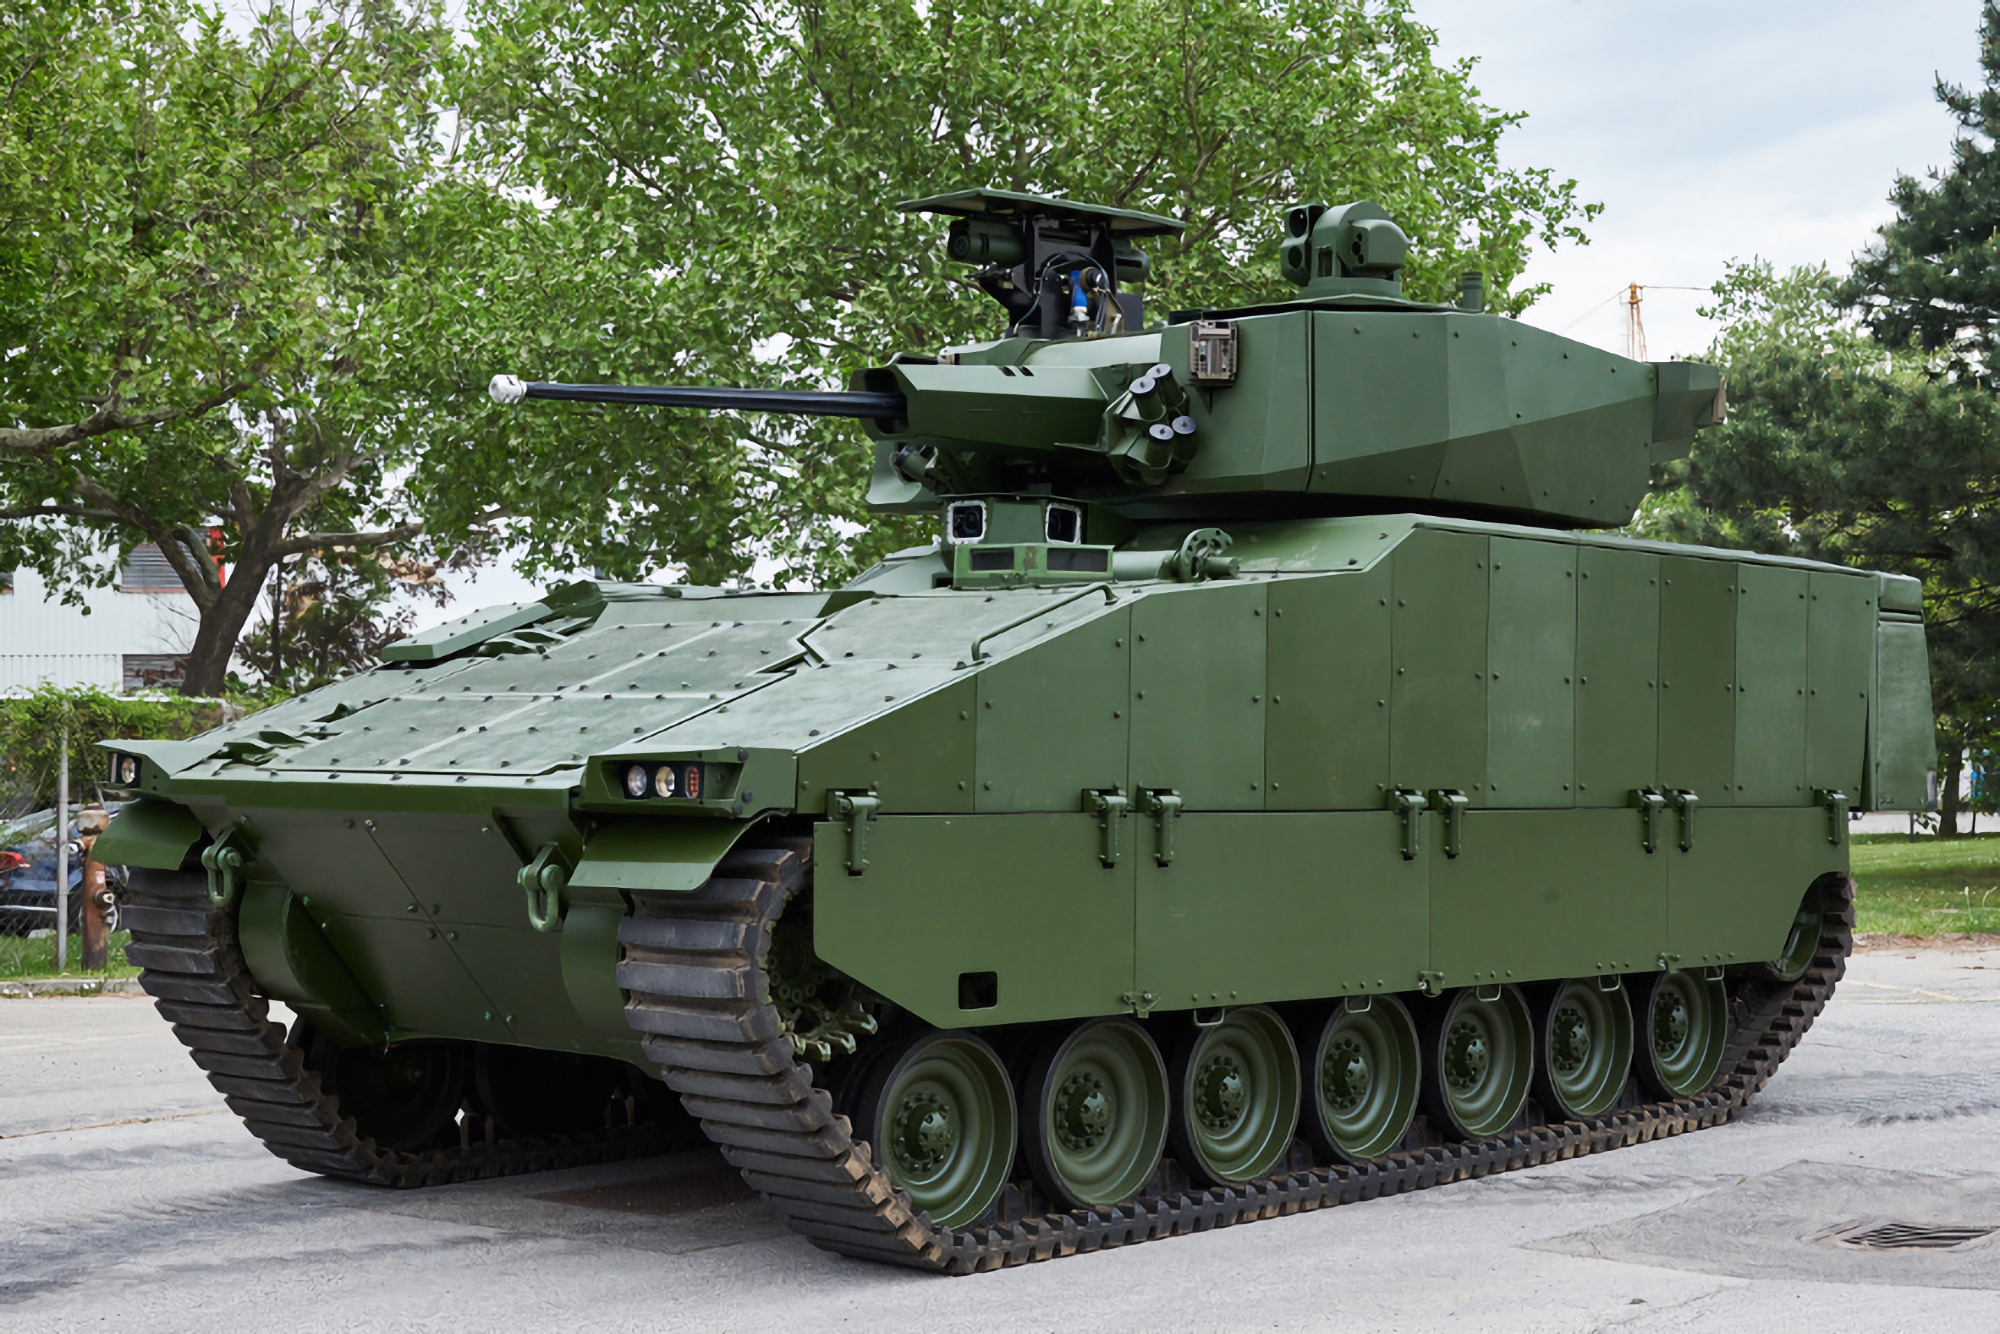 Czechoslovak Group, General Dynamics och Ukrainian Armor kan komma att lokalisera tillverkningen av ASCOD infanteristridsfordon i Ukraina